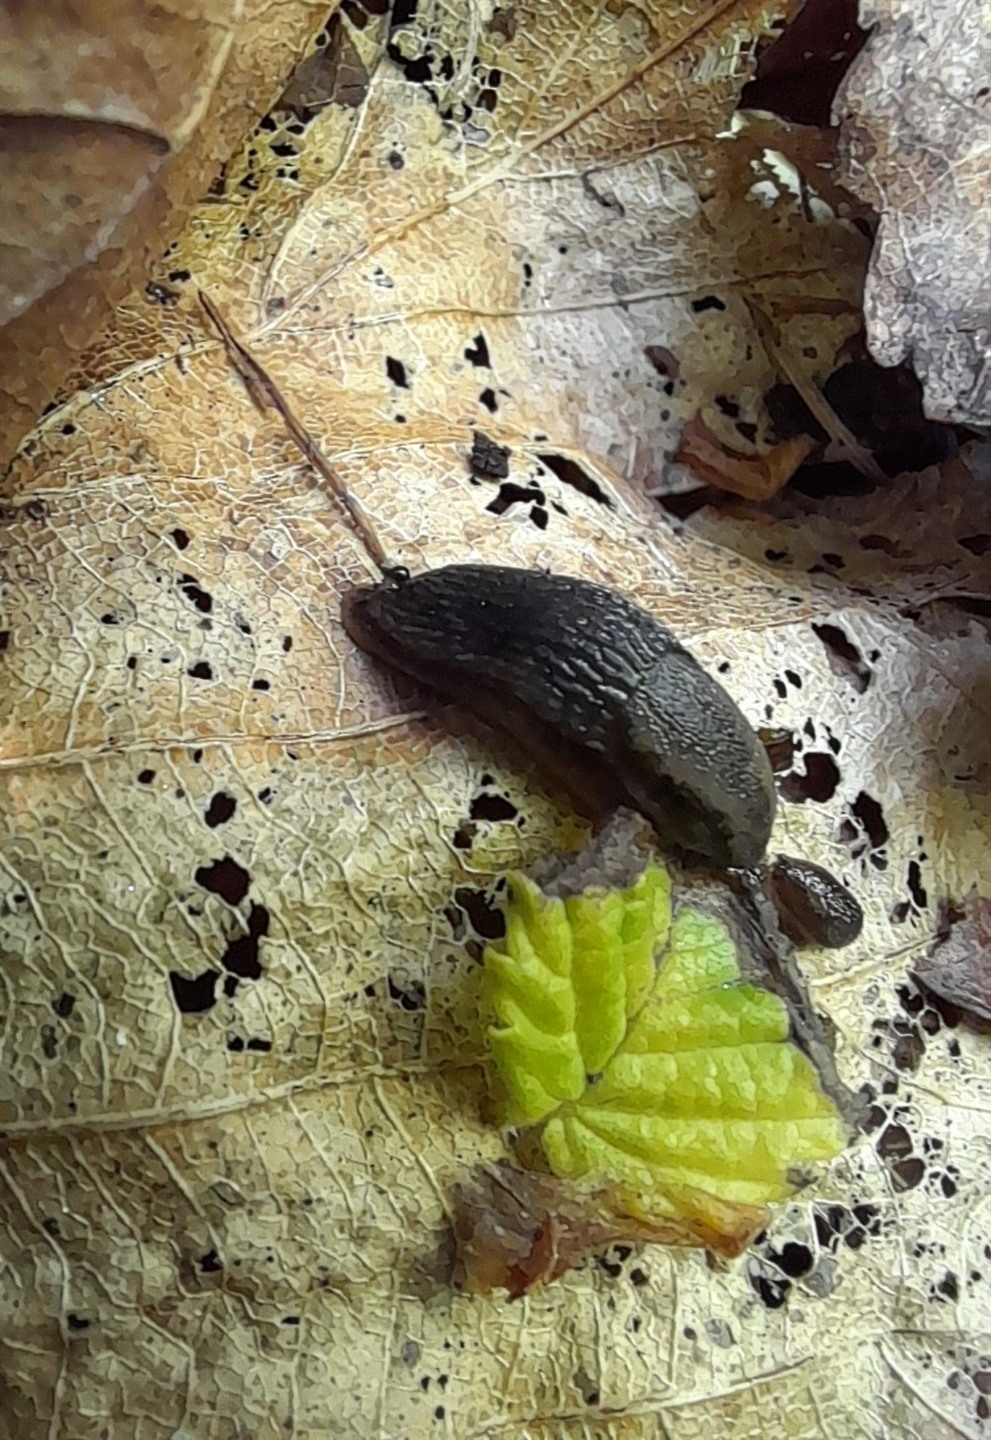 Mabille's Orange Soled Slug